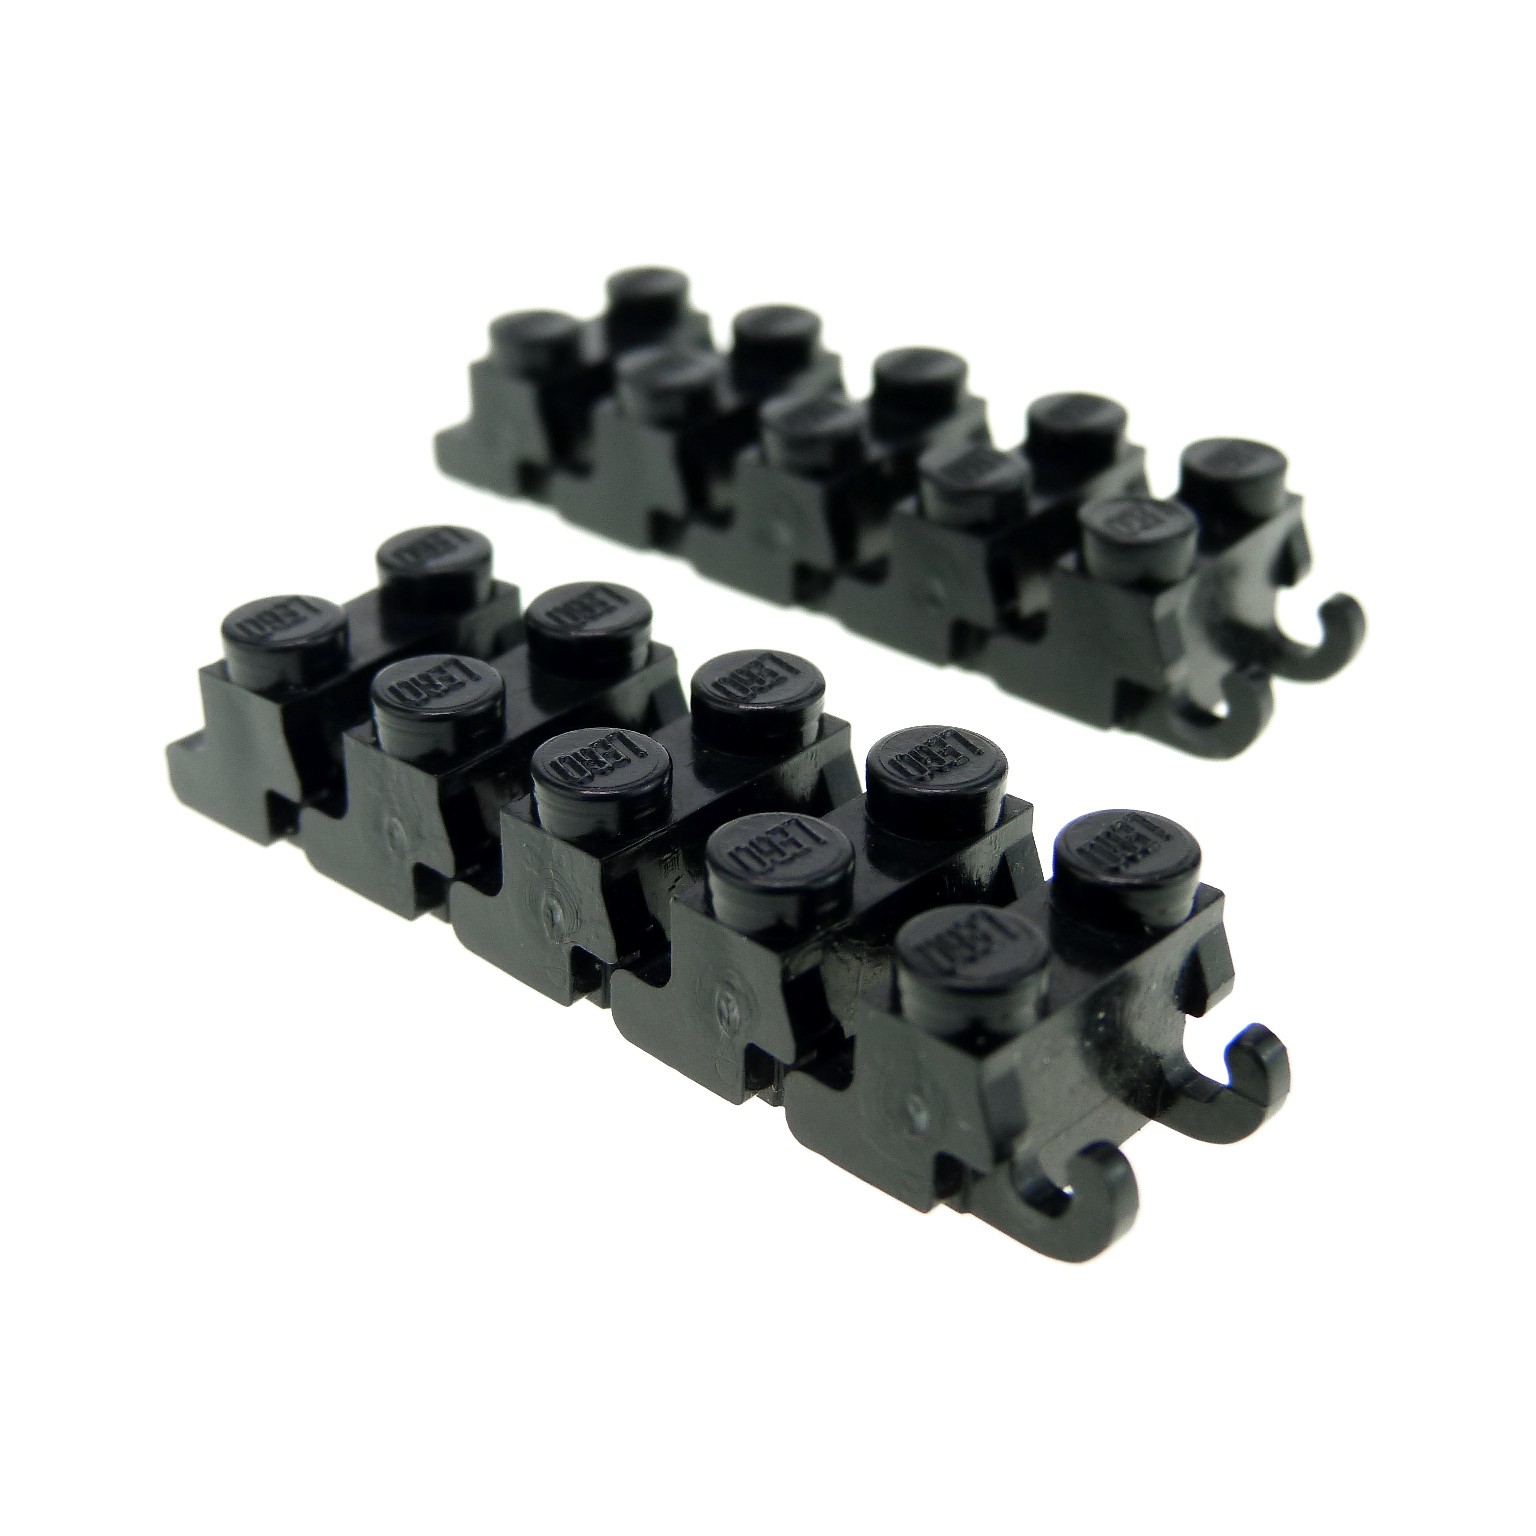 LEGO 50 x Kettenglieder Panzerkette breit schwarz black chain Technic 3873 